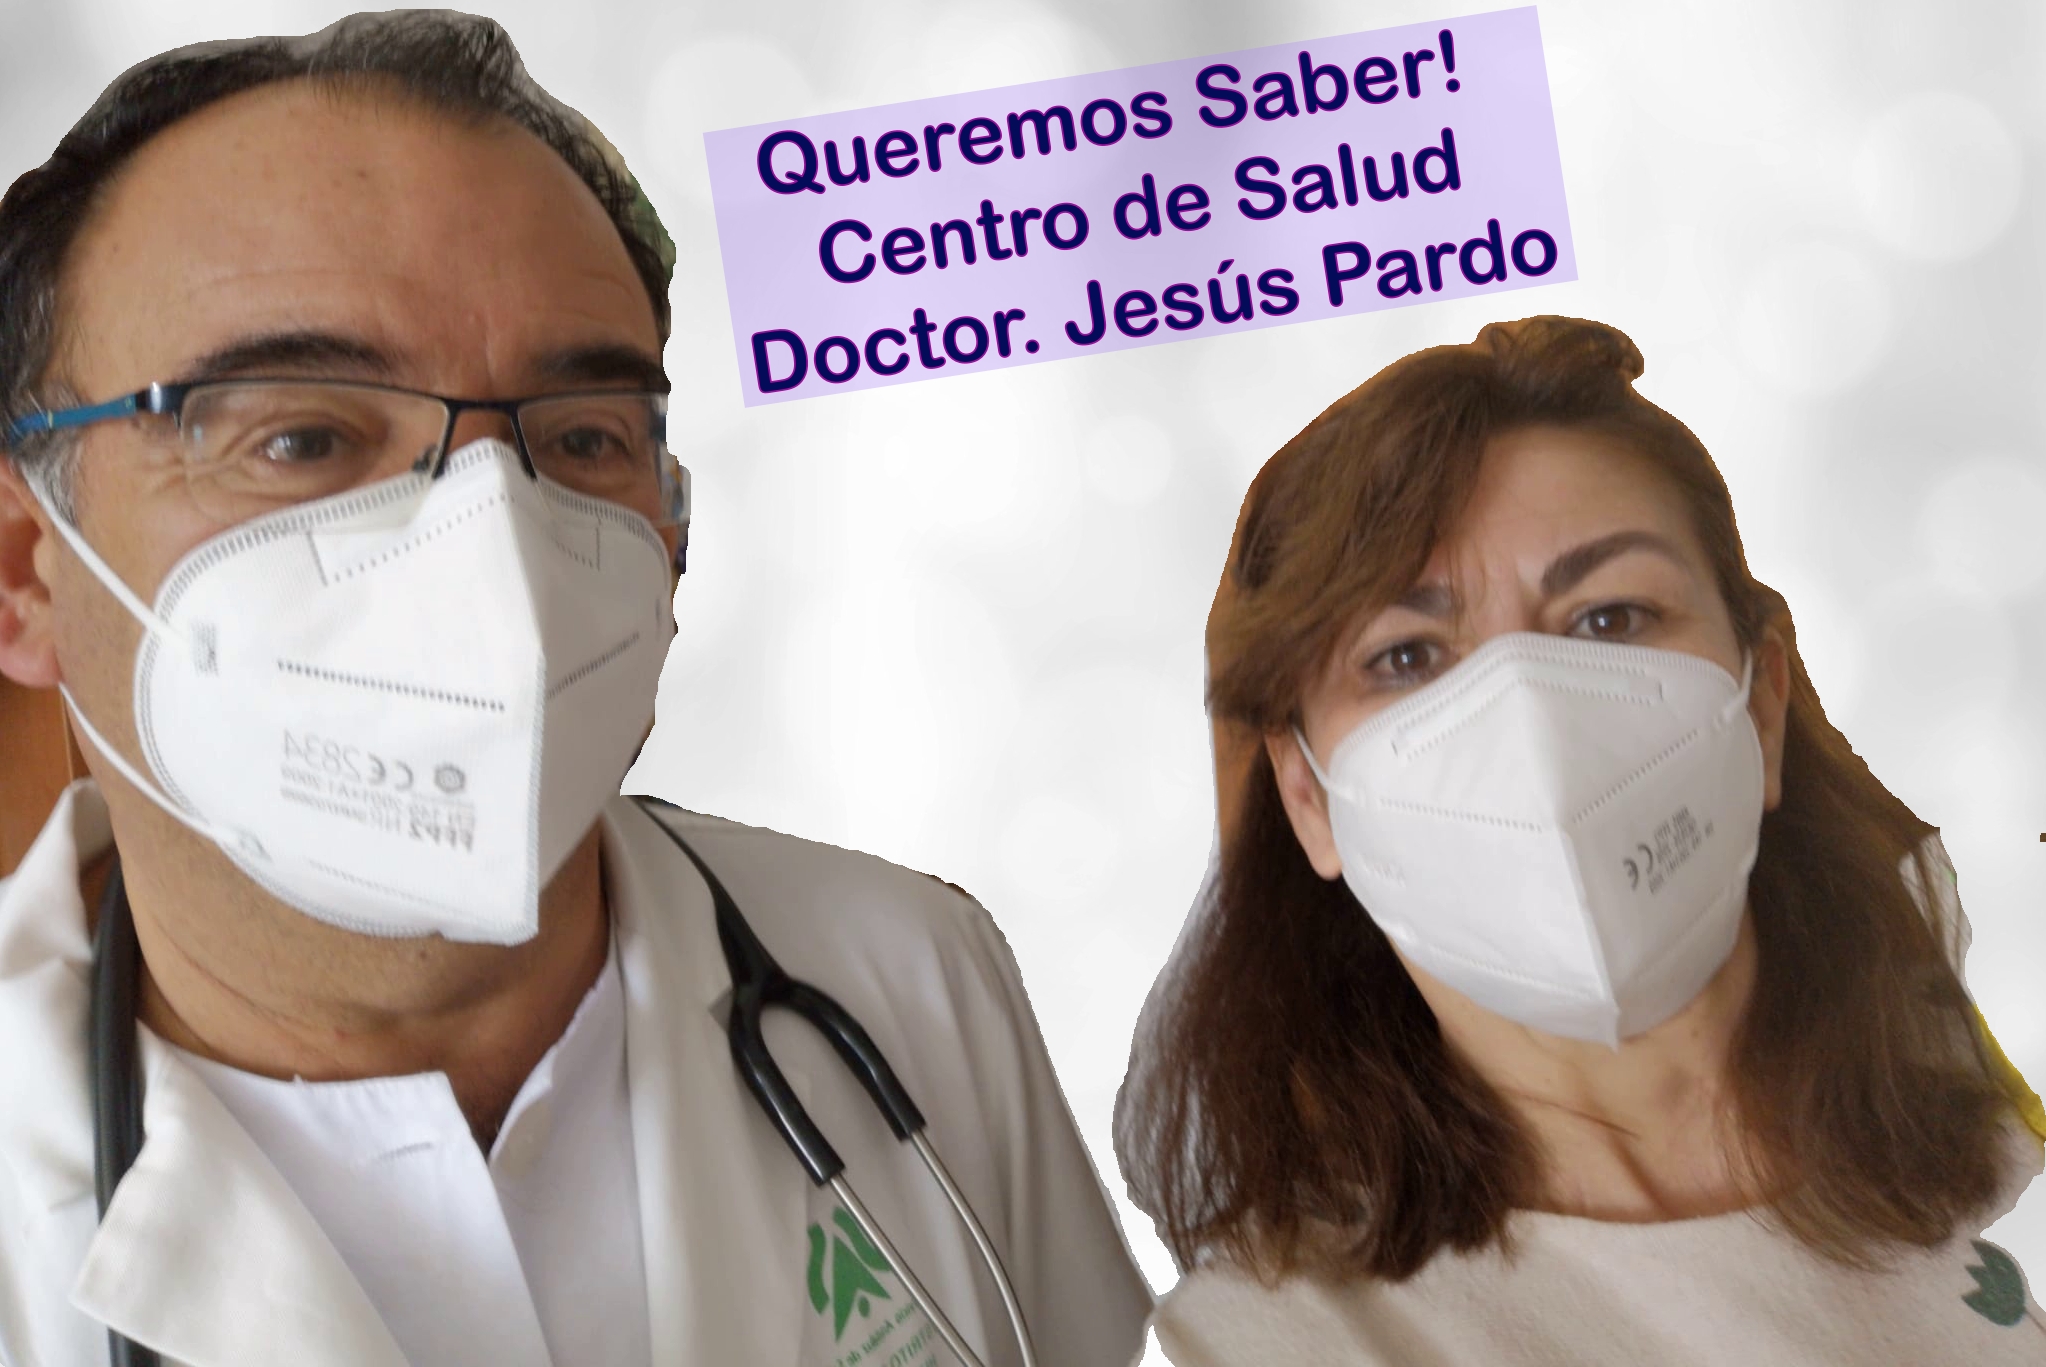 Queremos Saber 17-03-2021 Doctor Jesús Pardo-Centro de Salud del Torrejón